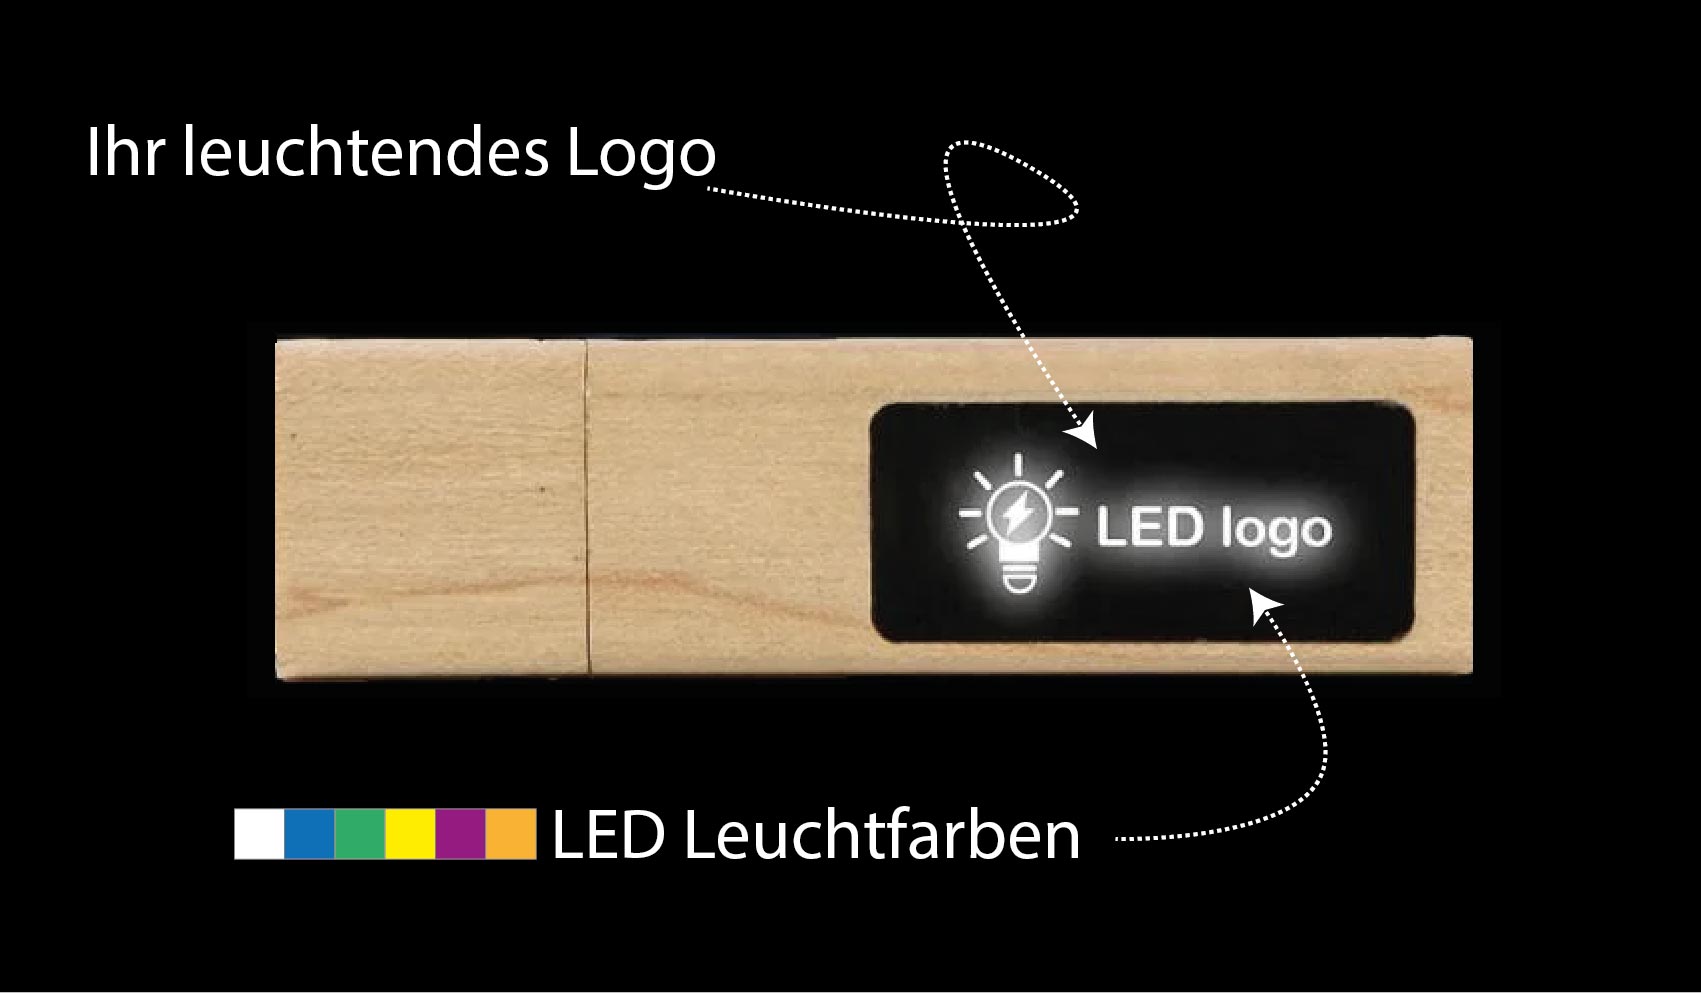 usb sticks led leuchtendes logo